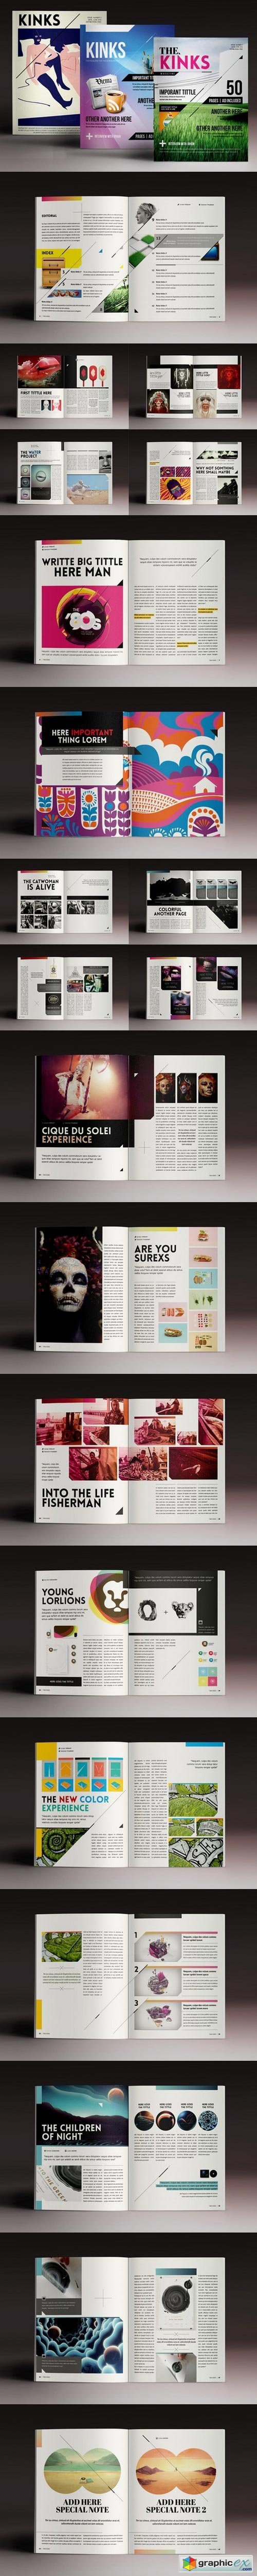 Design Magazine 4